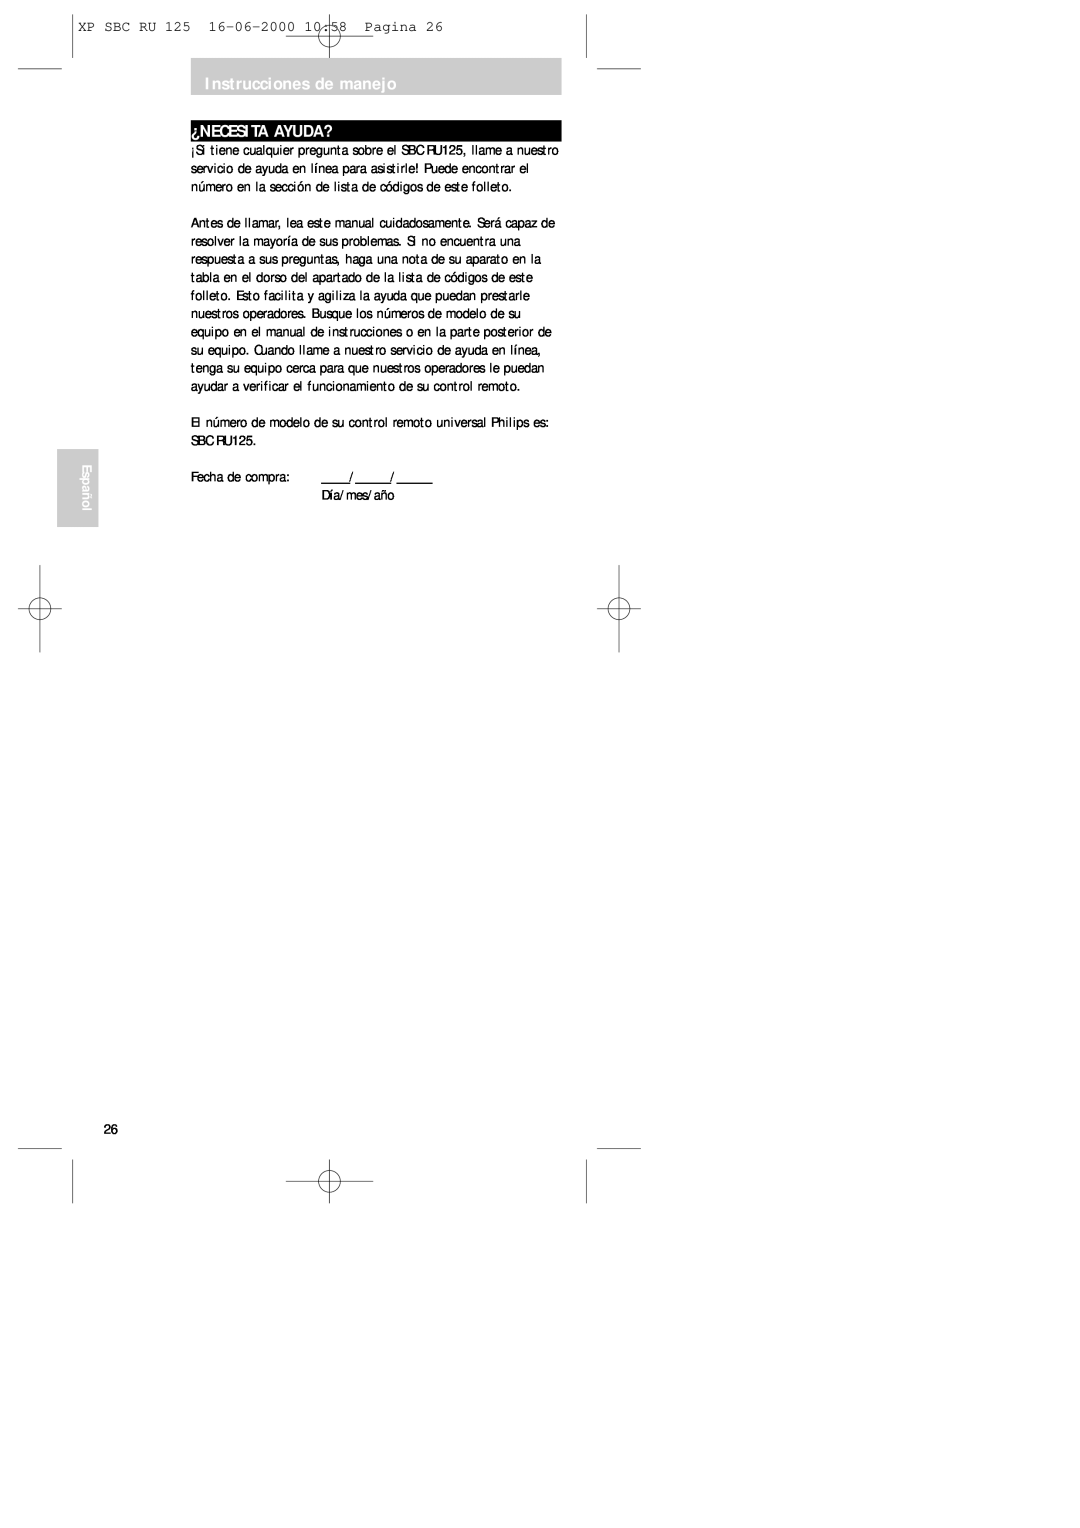 Philips RU125 manual Instrucciones de manejo ¿NECESITA AYUDA?, XP SBC RU 125 16-06-200010 58 Pagina, Español, Día/mes/año 